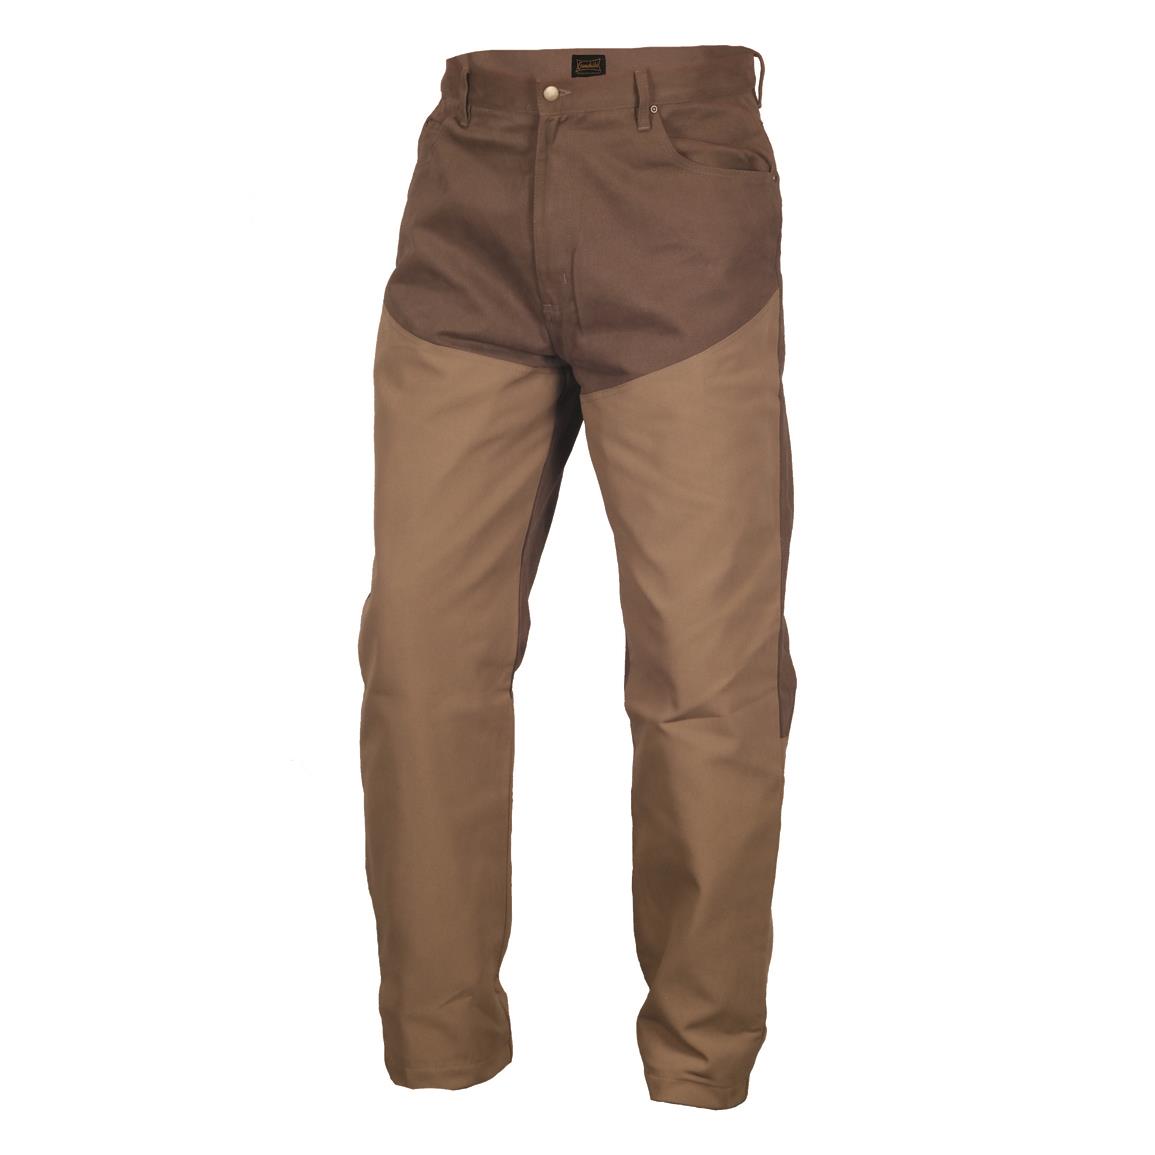 Gamehide Men's Woodland Upland Jeans, Dark Brown